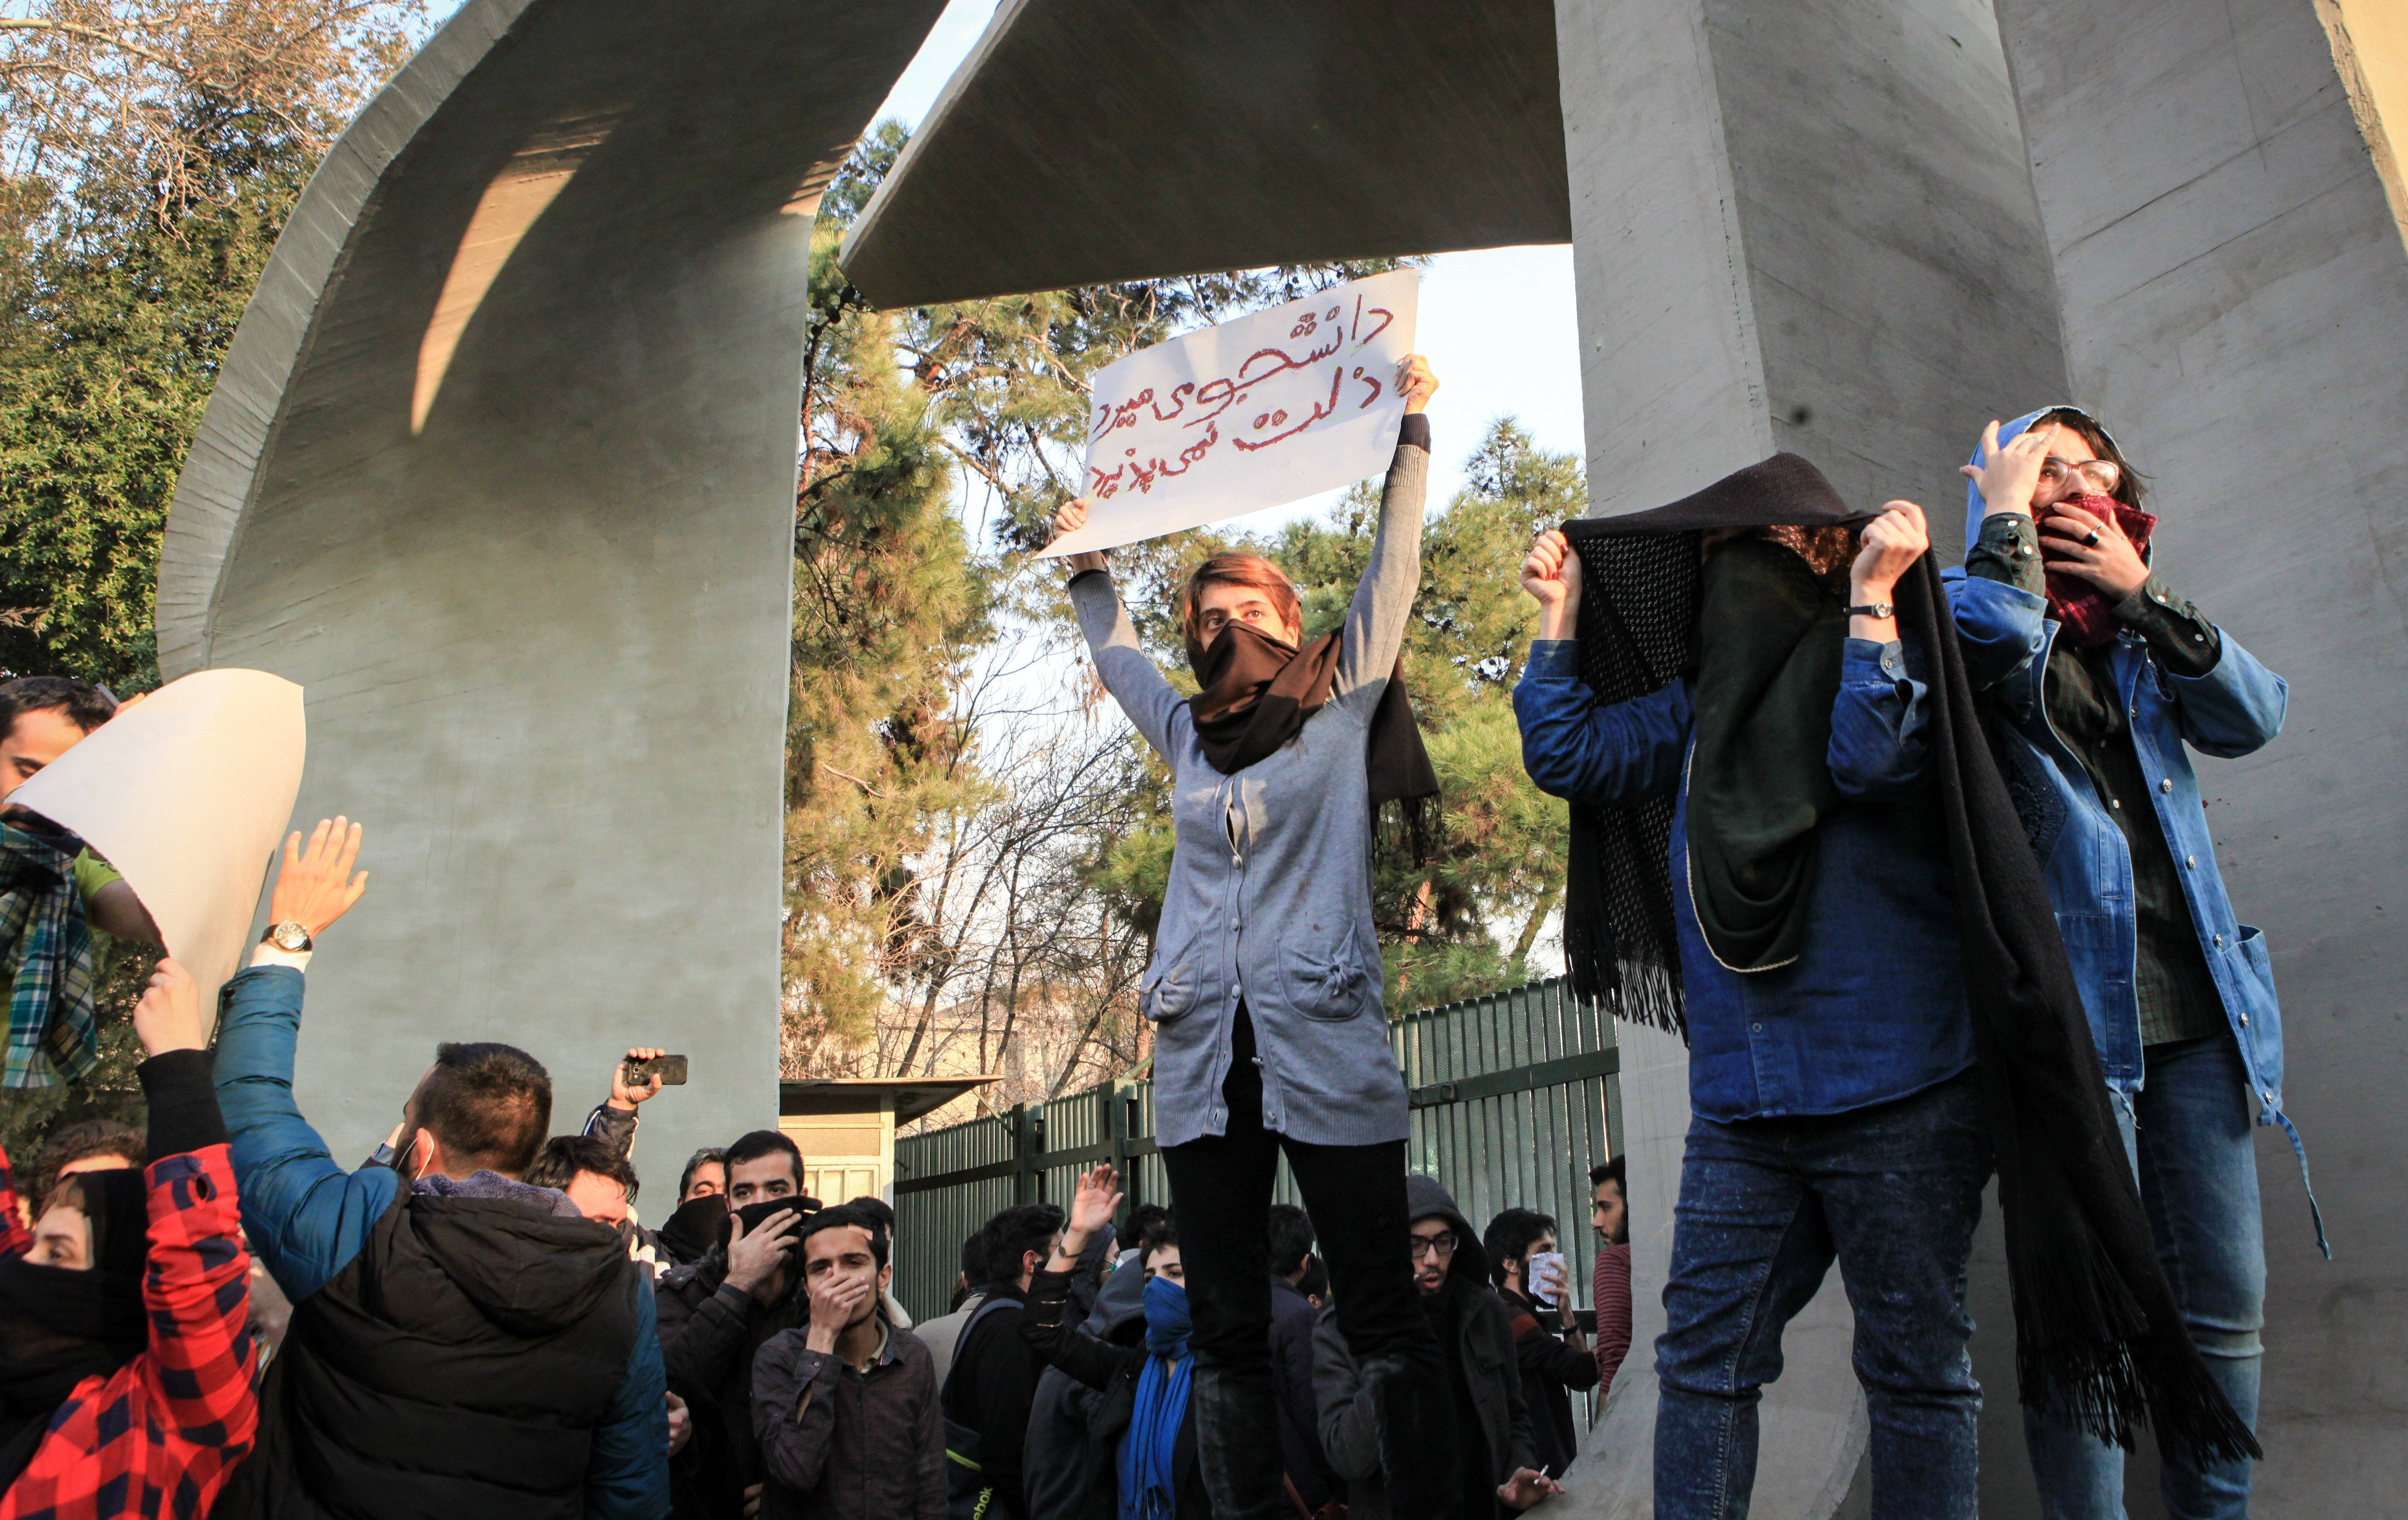 İran'daki gösterilerde kan aktı: 2 ölü